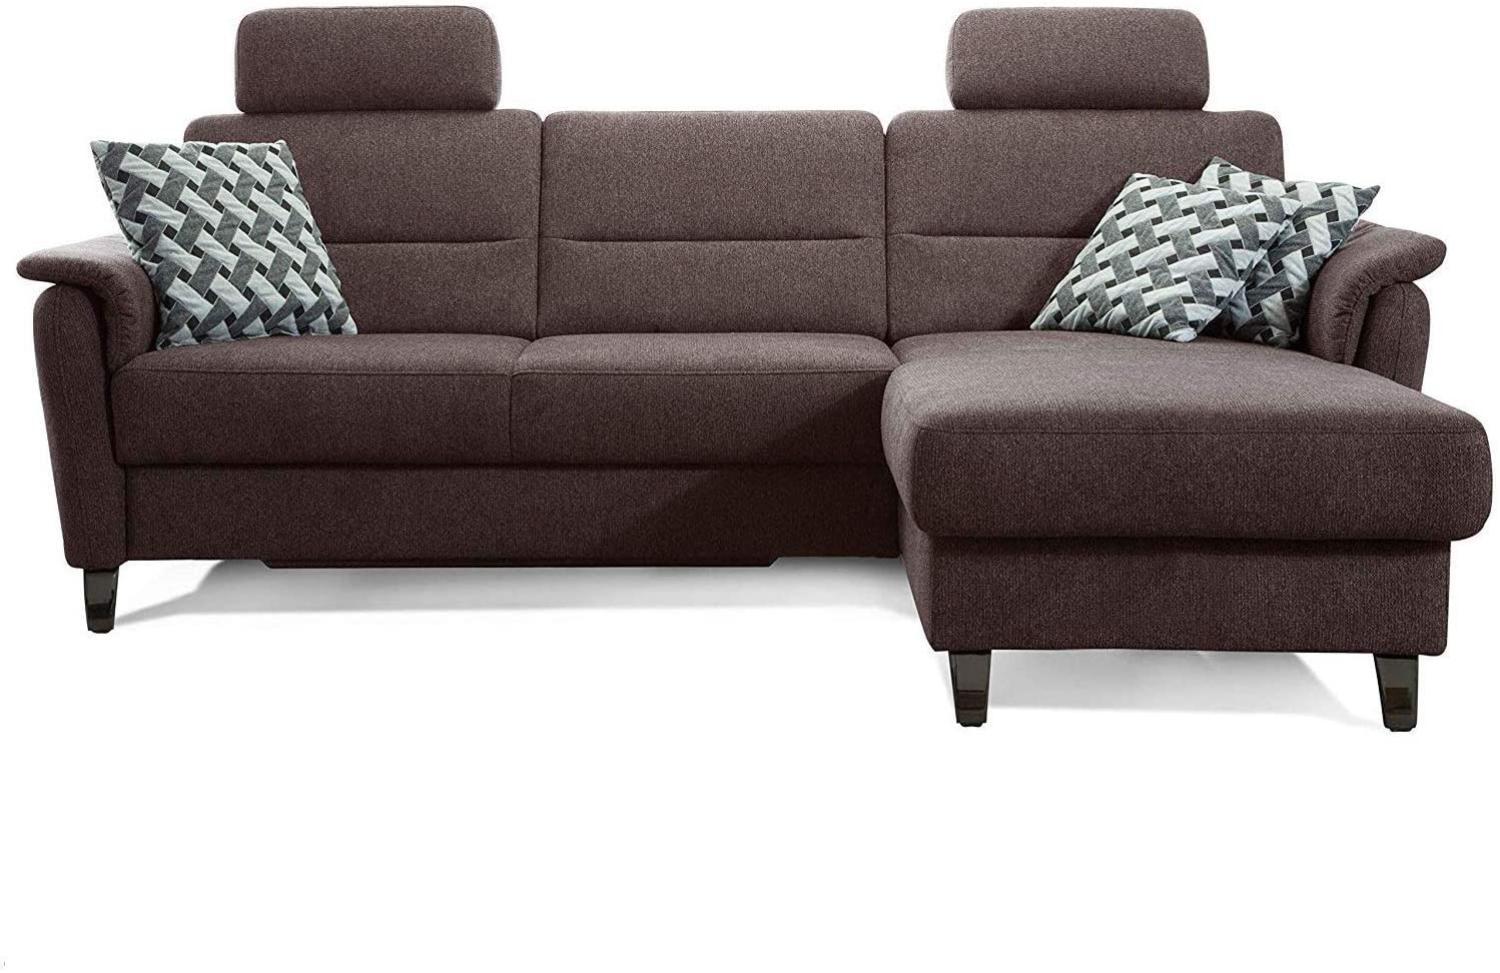 Cavadore Schlafsofa Palera mit Federkern / L-Form Sofa mit Bettfunktion / 244 x 89 x 164 / Stoff Braun Bild 1